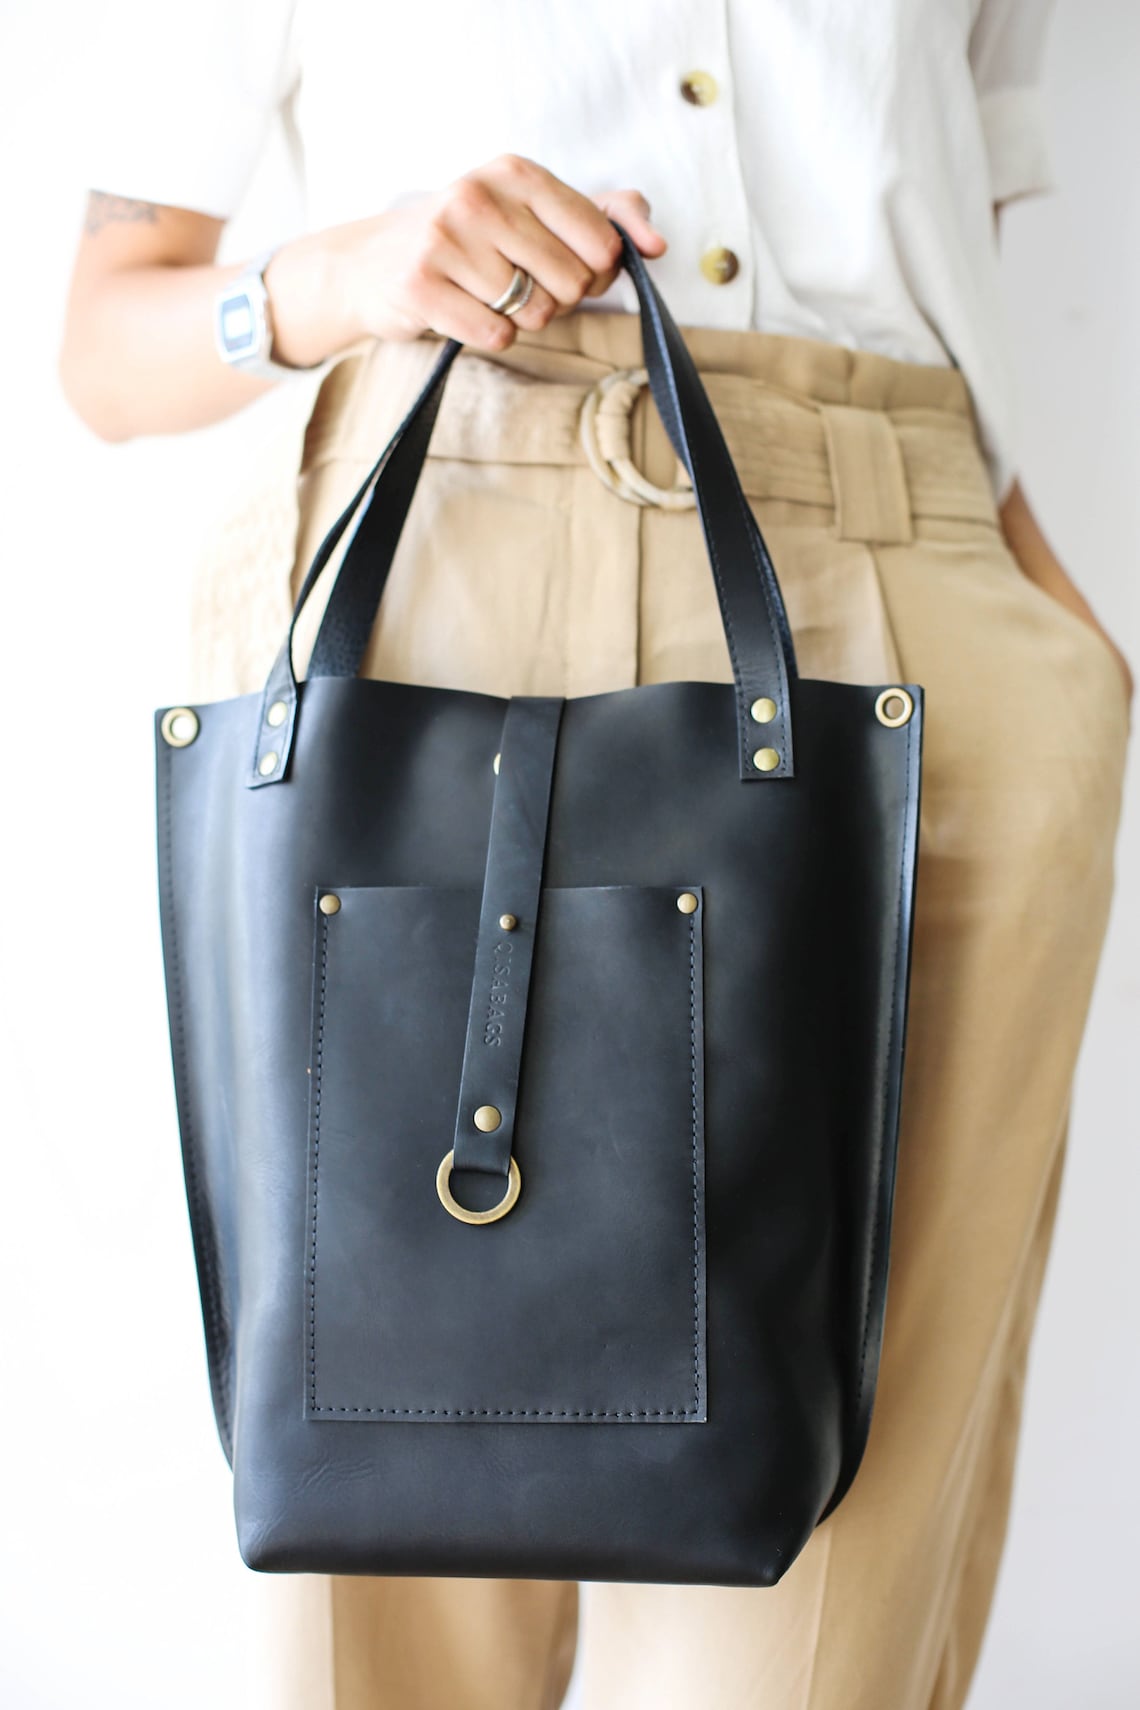 Medium Leather Tote Bag Black Leather Handbag Black Tote | Etsy